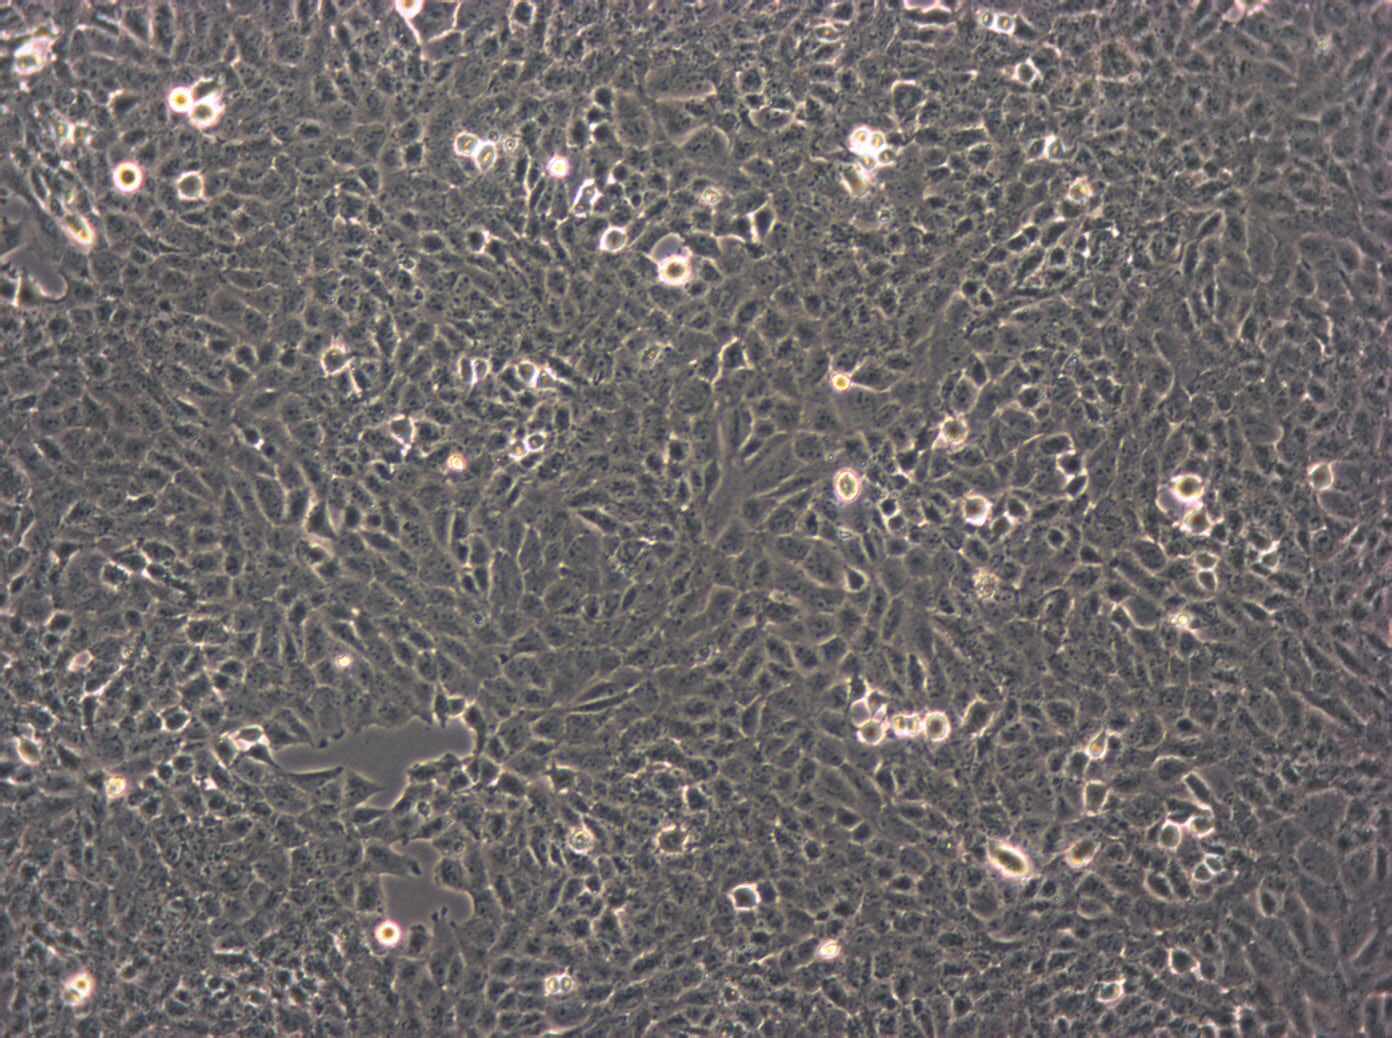 MC3T3-E1 Cells|小鼠胚胎成骨细胞前体需消化细胞系